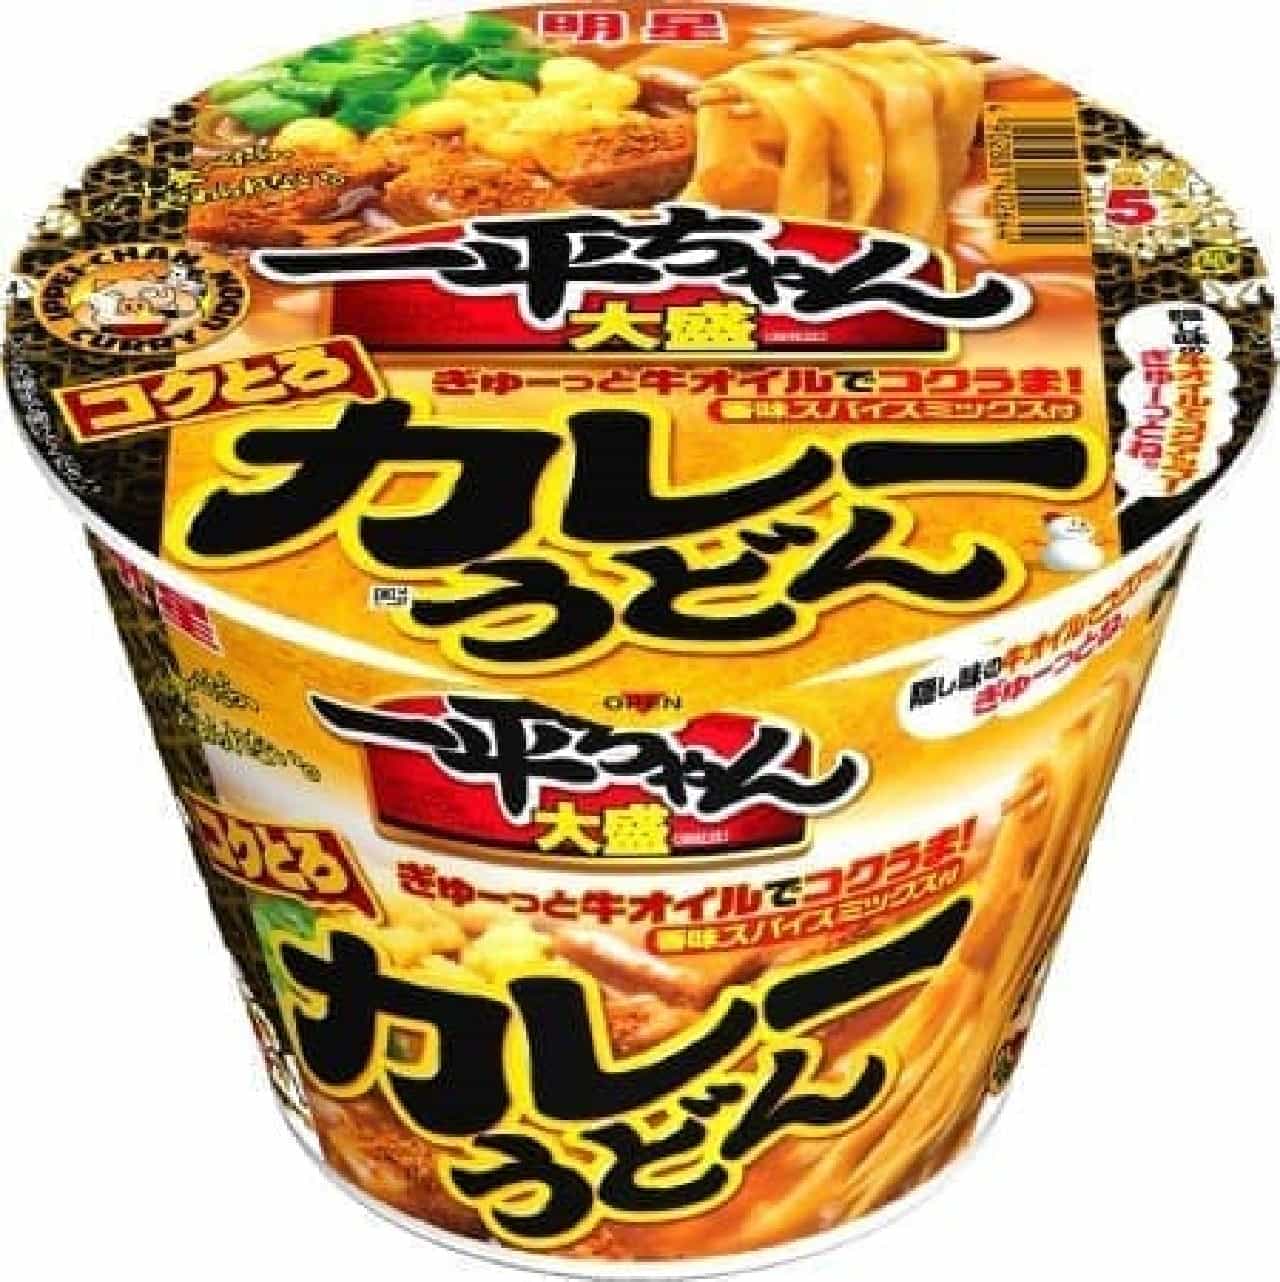 Myojo Foods "Myojo Ippei-chan Omori Curry Udon"